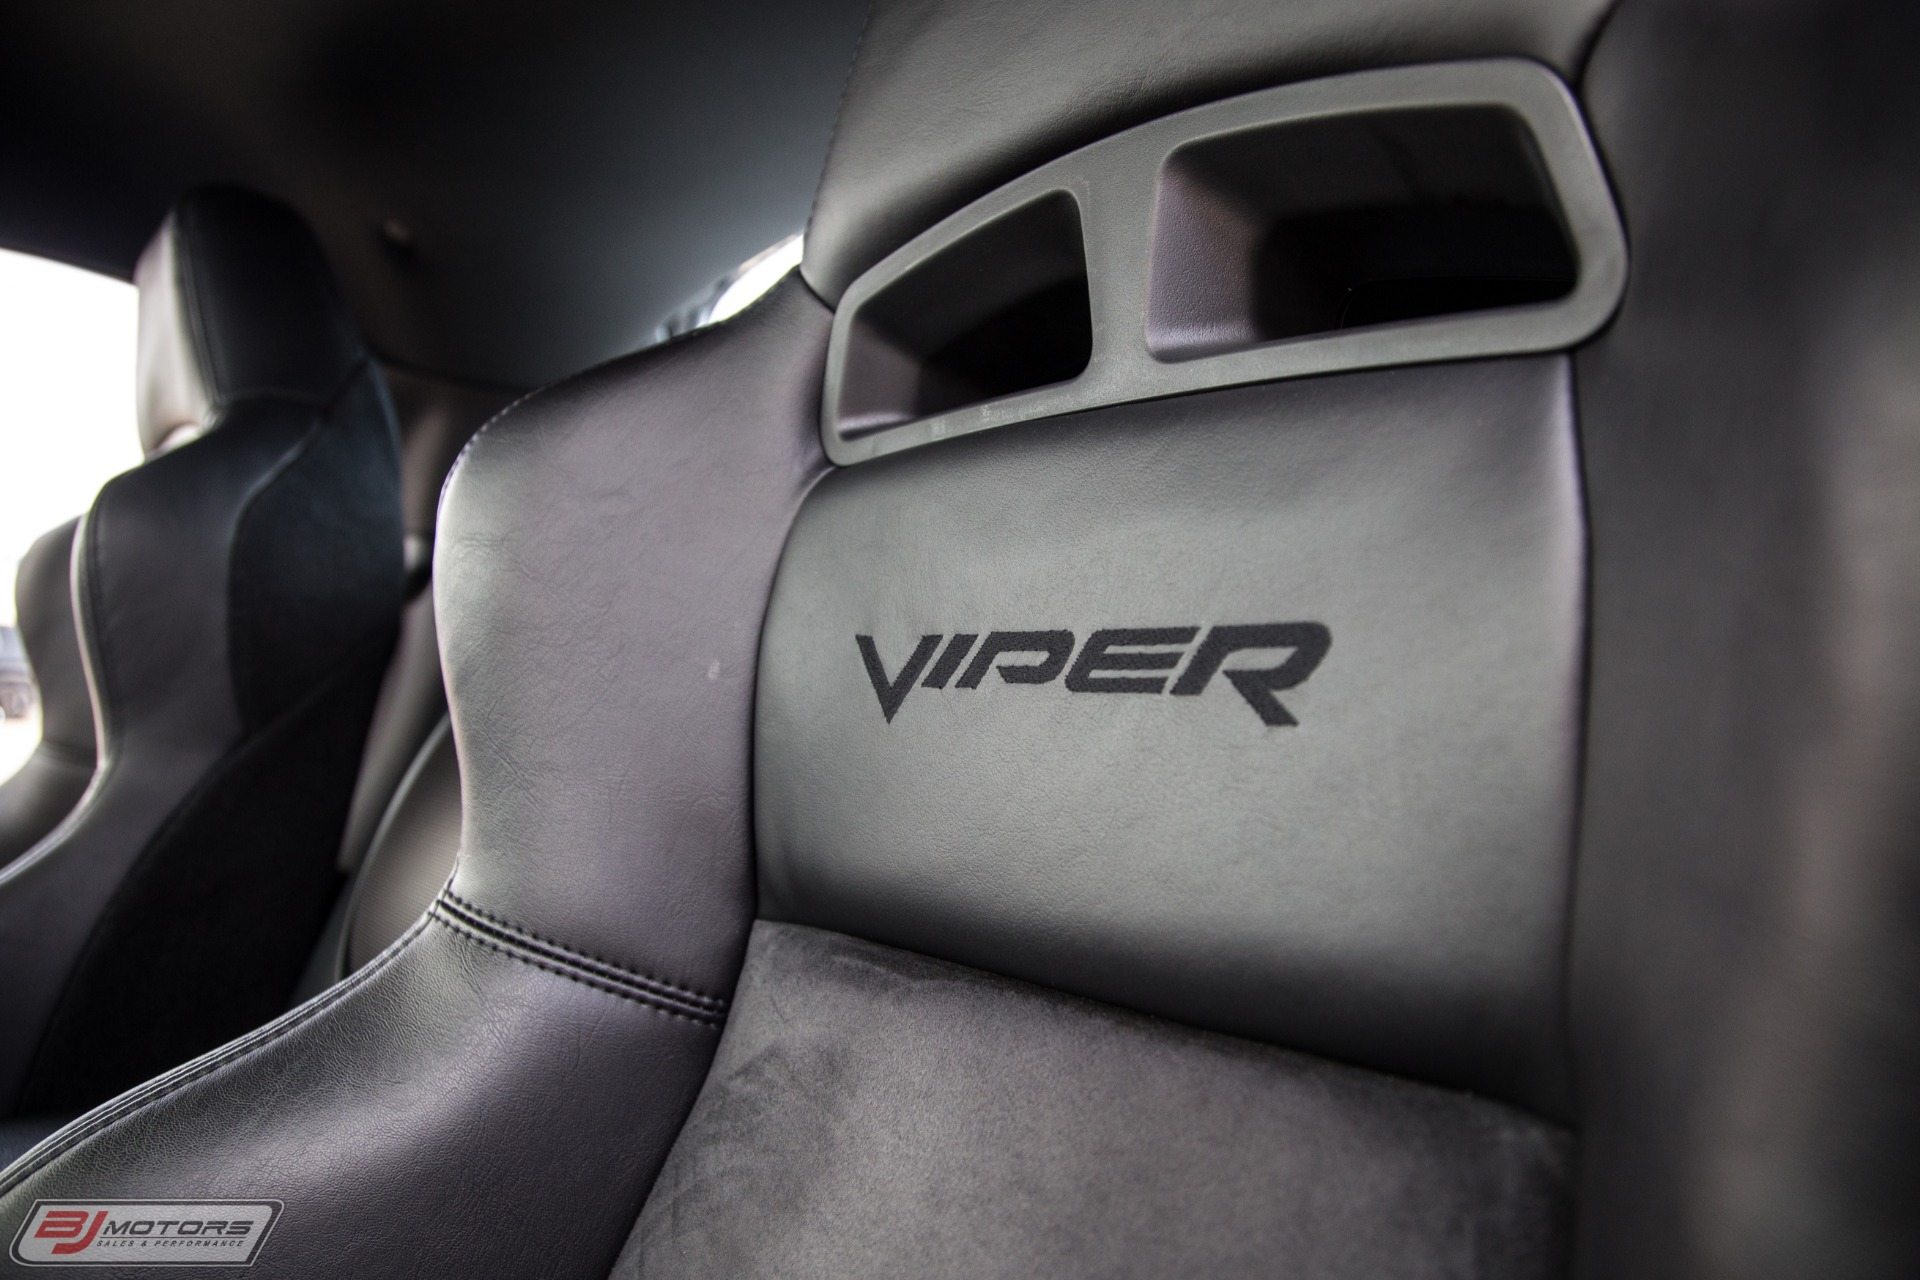 Used-2009-Dodge-Viper-ACR